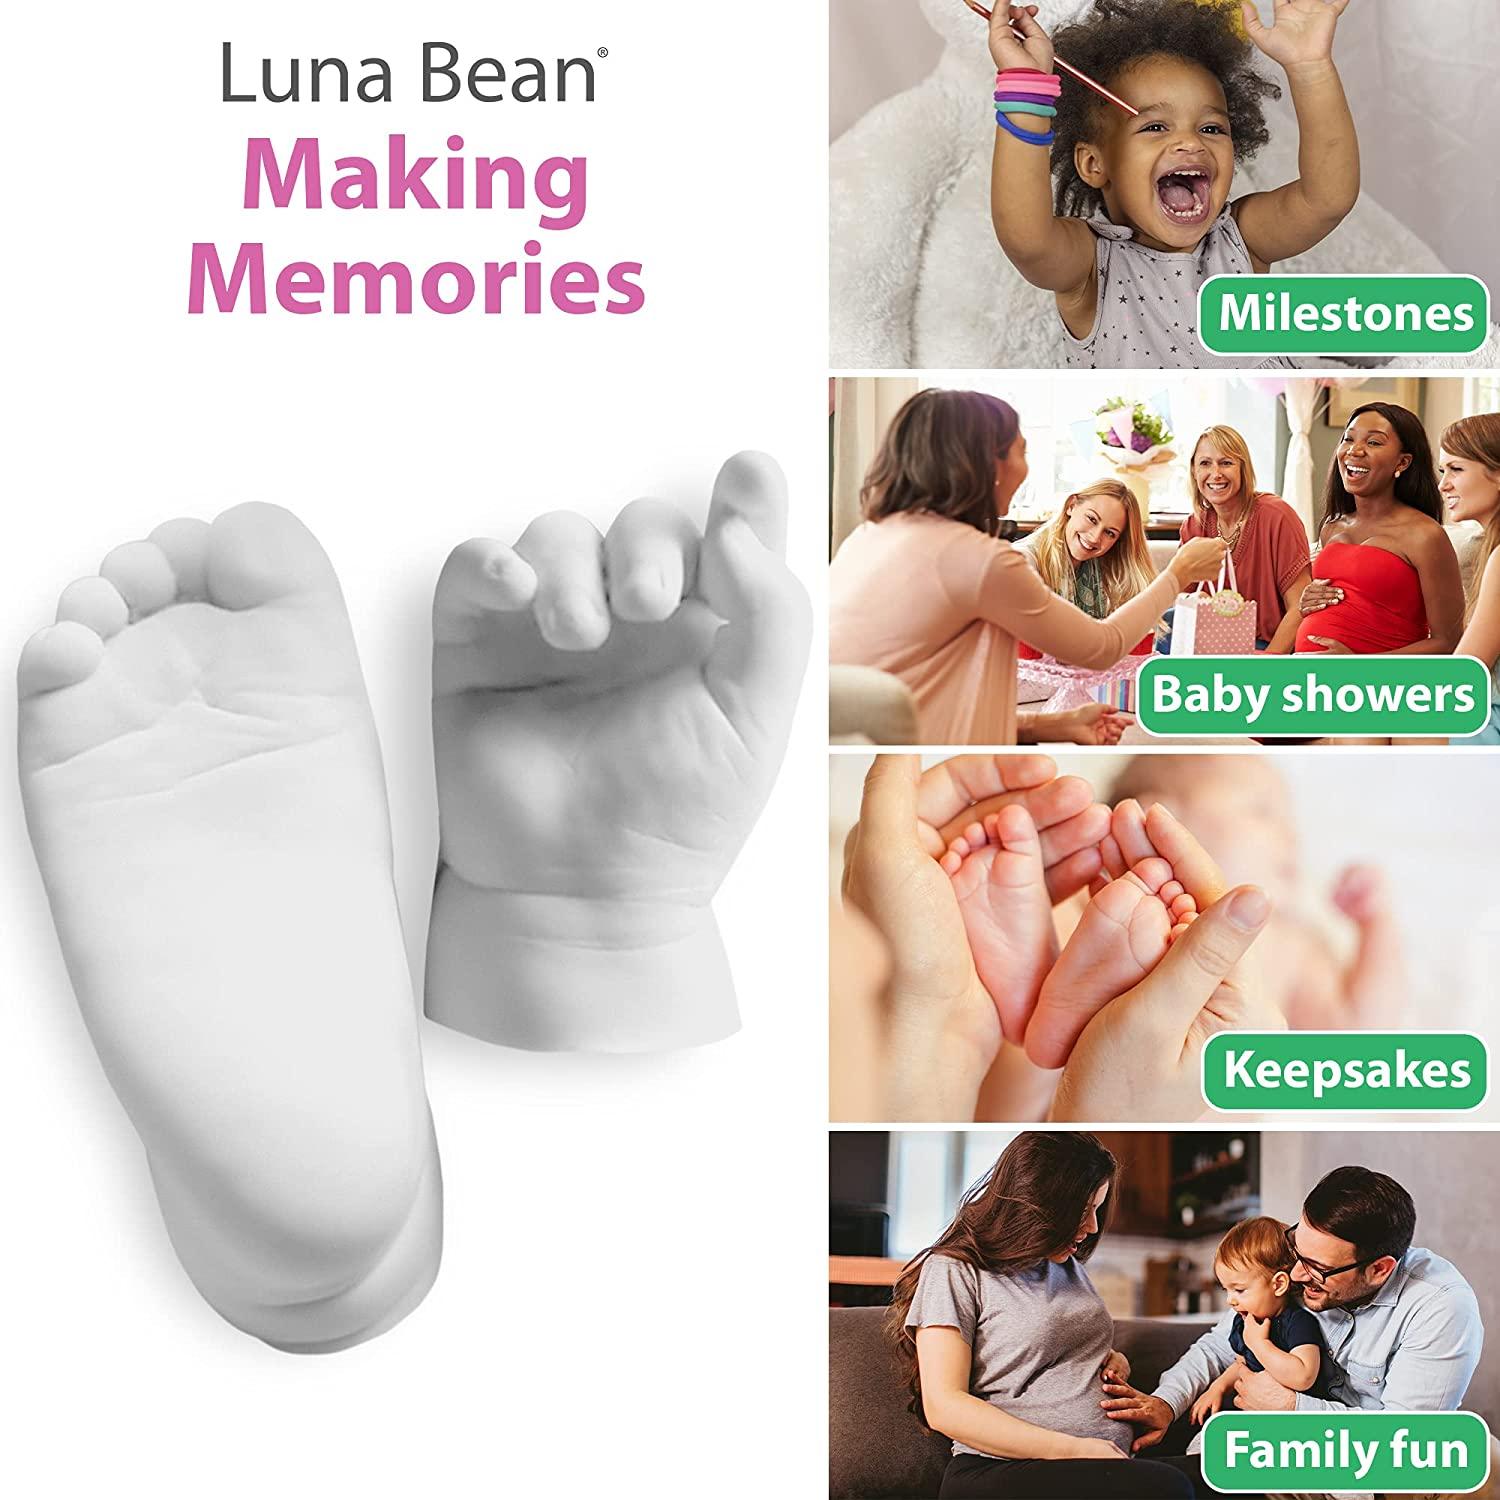 Luna Bean Baby Keepsake Hand Casting Kit - Plaster Hand Molding Casting Kit for Infant Hand & Foot Molding - Baby Casting Kit for First Birthday, Chr